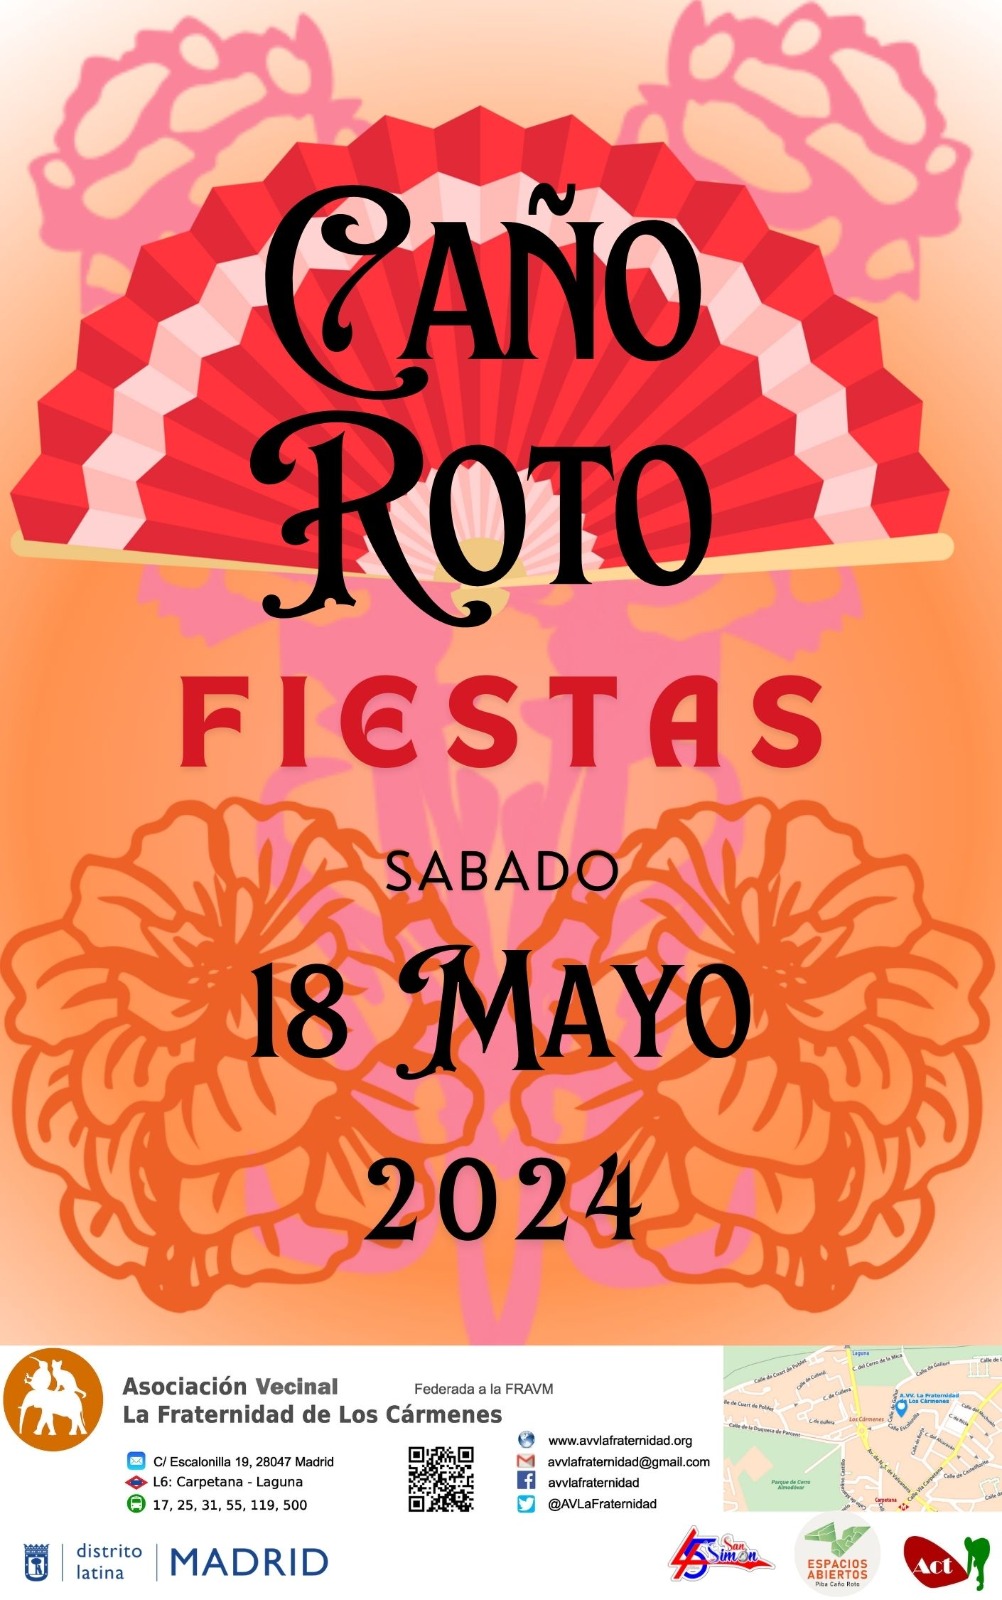 Fiestas de Caño Roto 2024 (sábado 18 de mayo)